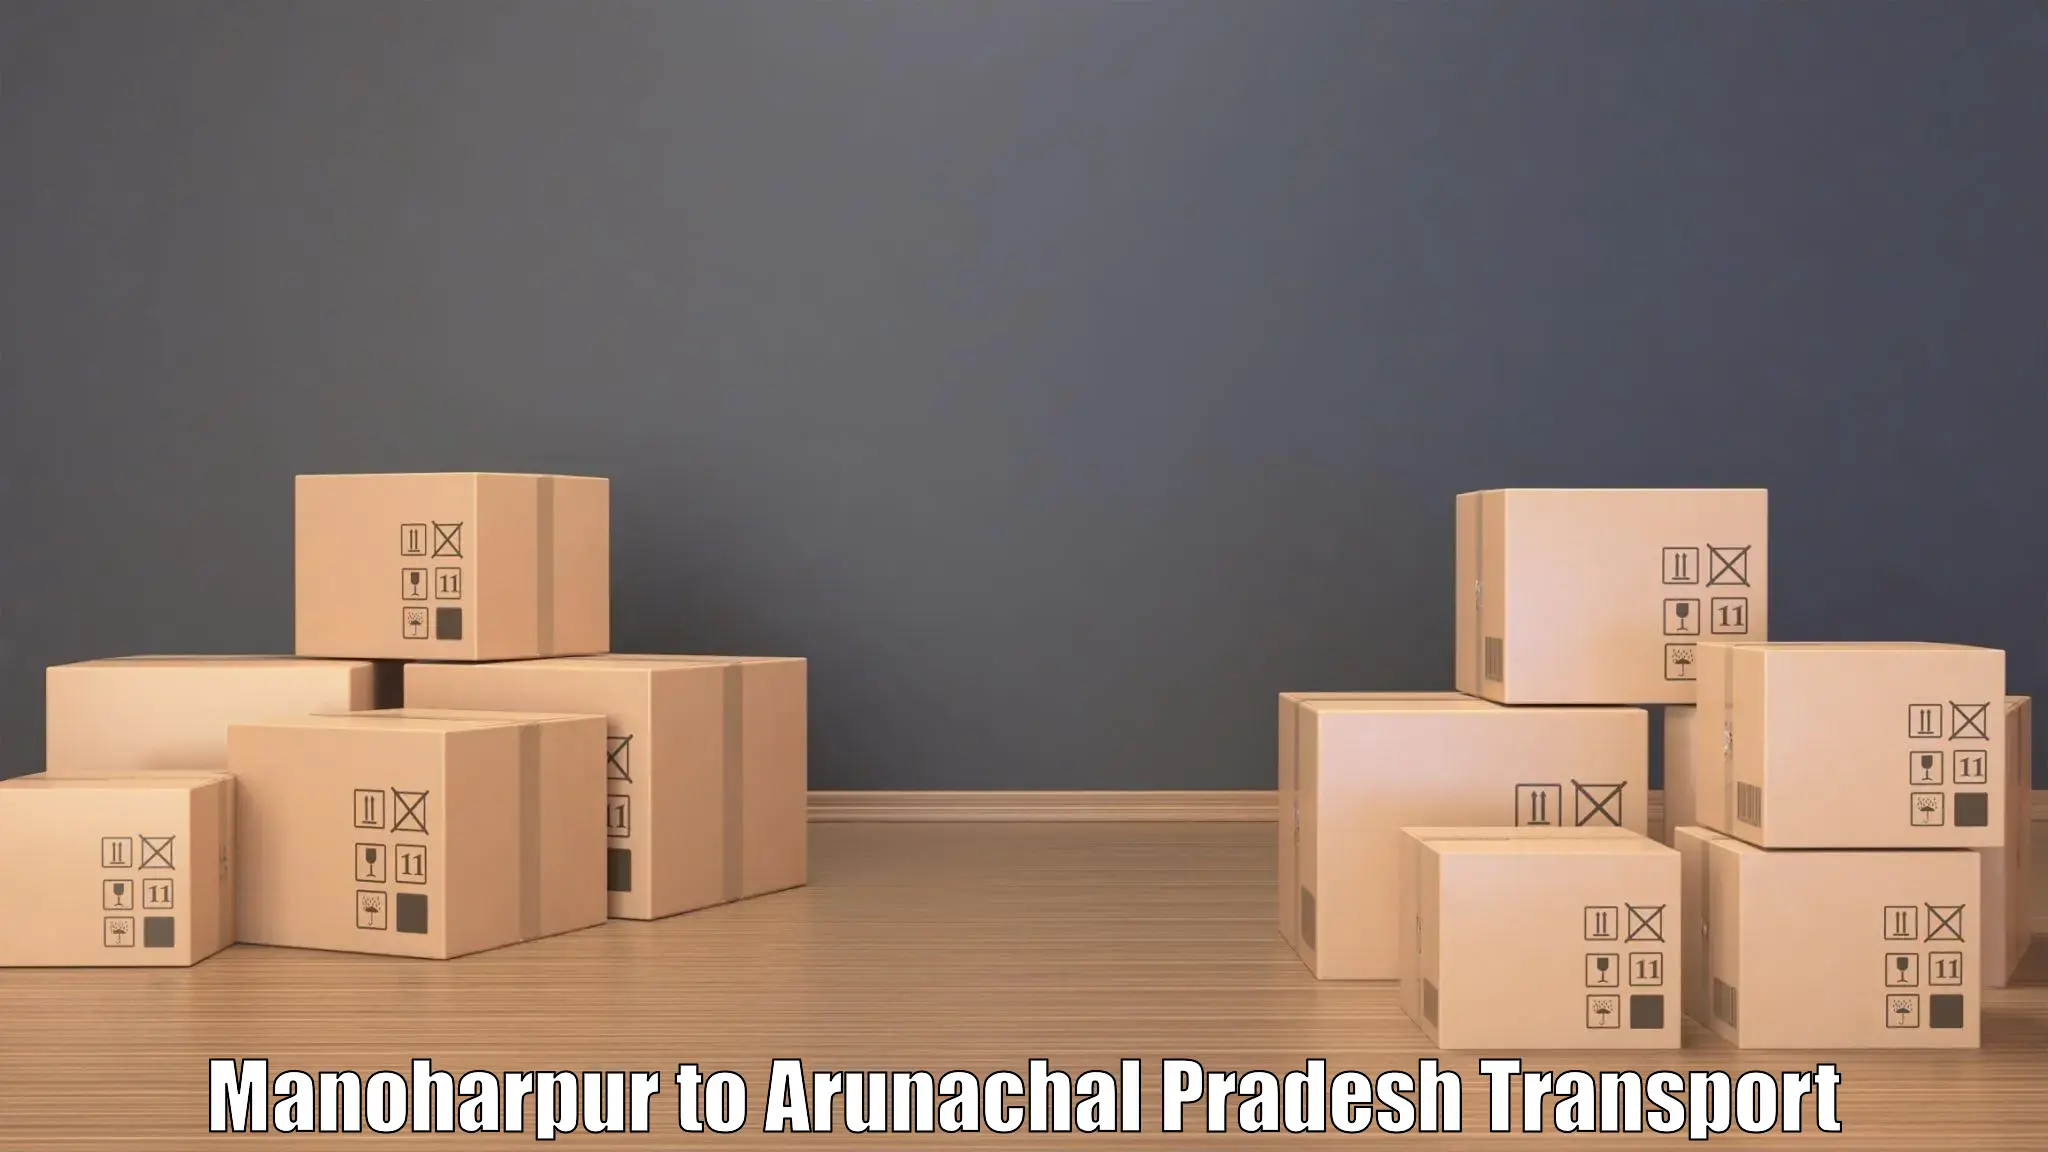 Best transport services in India Manoharpur to Arunachal Pradesh